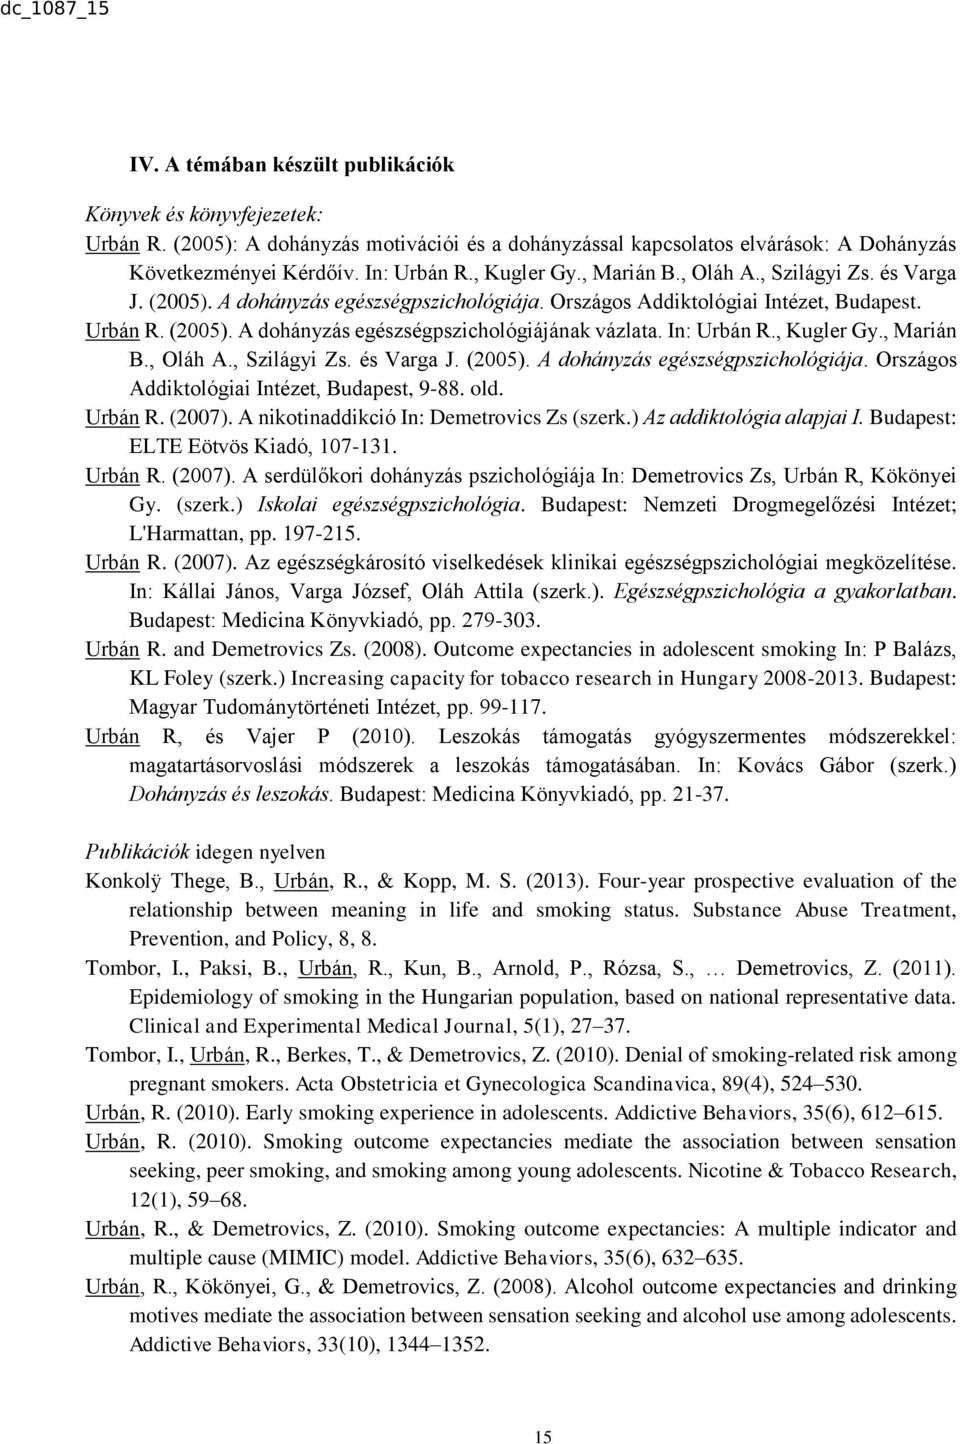 In: Urbán R., Kugler Gy., Marián B., Oláh A., Szilágyi Zs. és Varga J. (2005). A dohányzás egészségpszichológiája. Országos Addiktológiai Intézet, Budapest, 9-88. old. Urbán R. (2007).